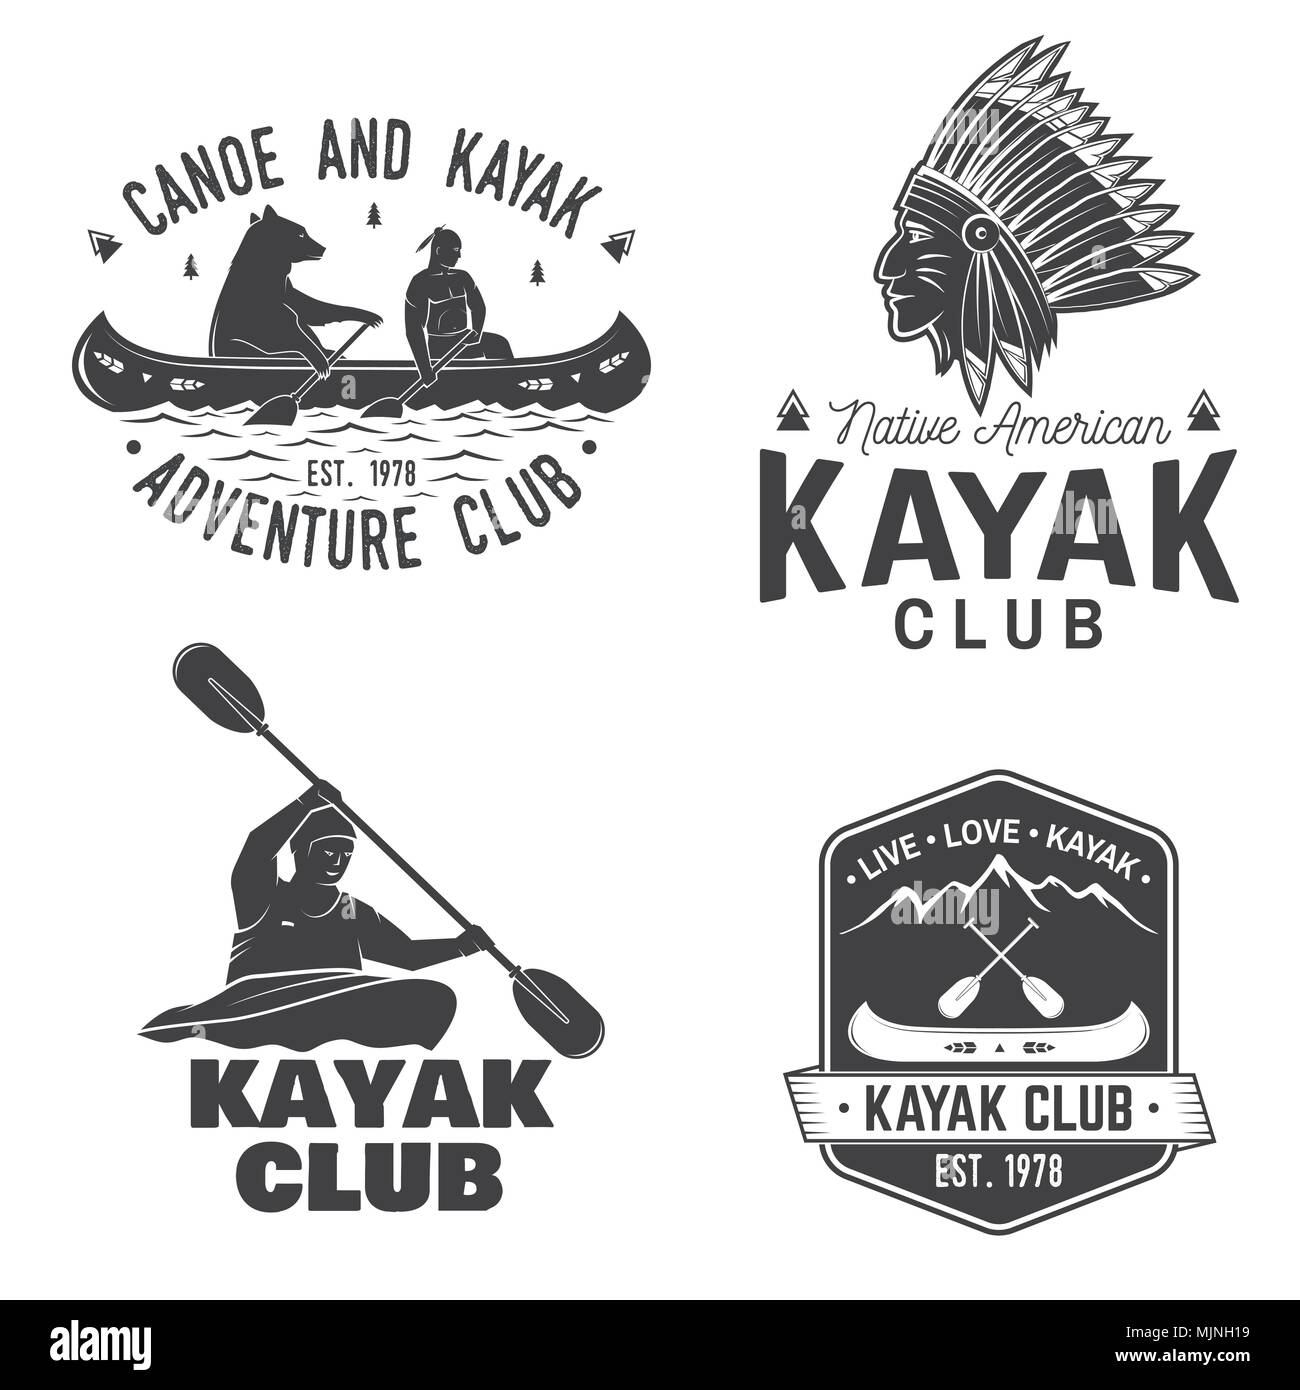 Ensemble de canot et kayak club de badges. Vecteur. Concept pour chemise, imprimer, stamp ou tee. Typographie vintage design avec vue sur la montagne, la rivière, un indien américain Illustration de Vecteur